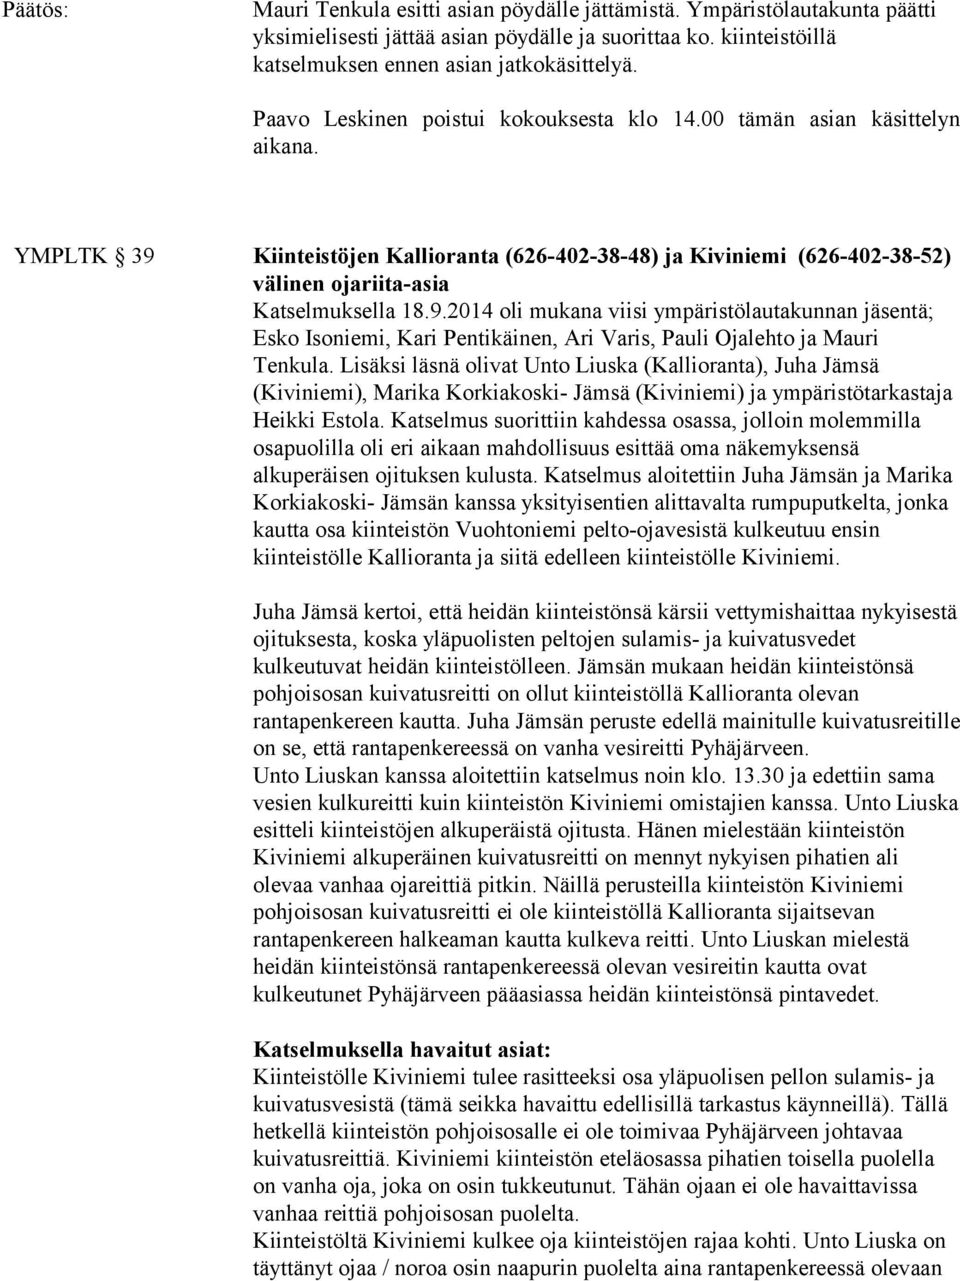 Kiinteistöjen Kallioranta (626-402-38-48) ja Kiviniemi (626-402-38-52) välinen ojariita-asia Katselmuksella 18.9.